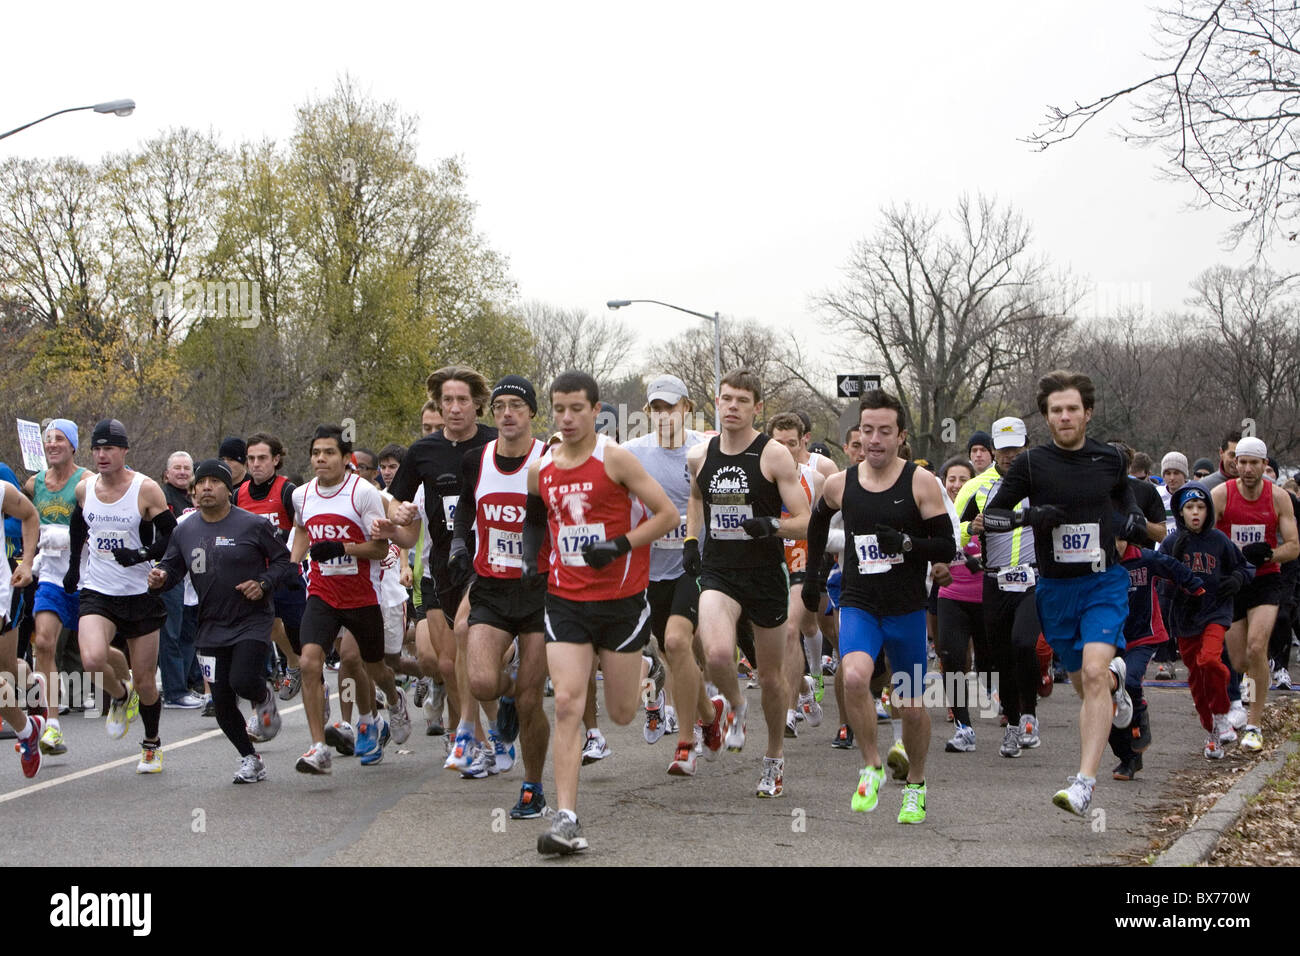 Jährliche Thanksgiving "Türkei Trab' 5 Meile laufen im Prospect Park in Brooklyn, New York.  Wettbewerbsfähige Läufer nach dem Start des Rennens Stockfoto